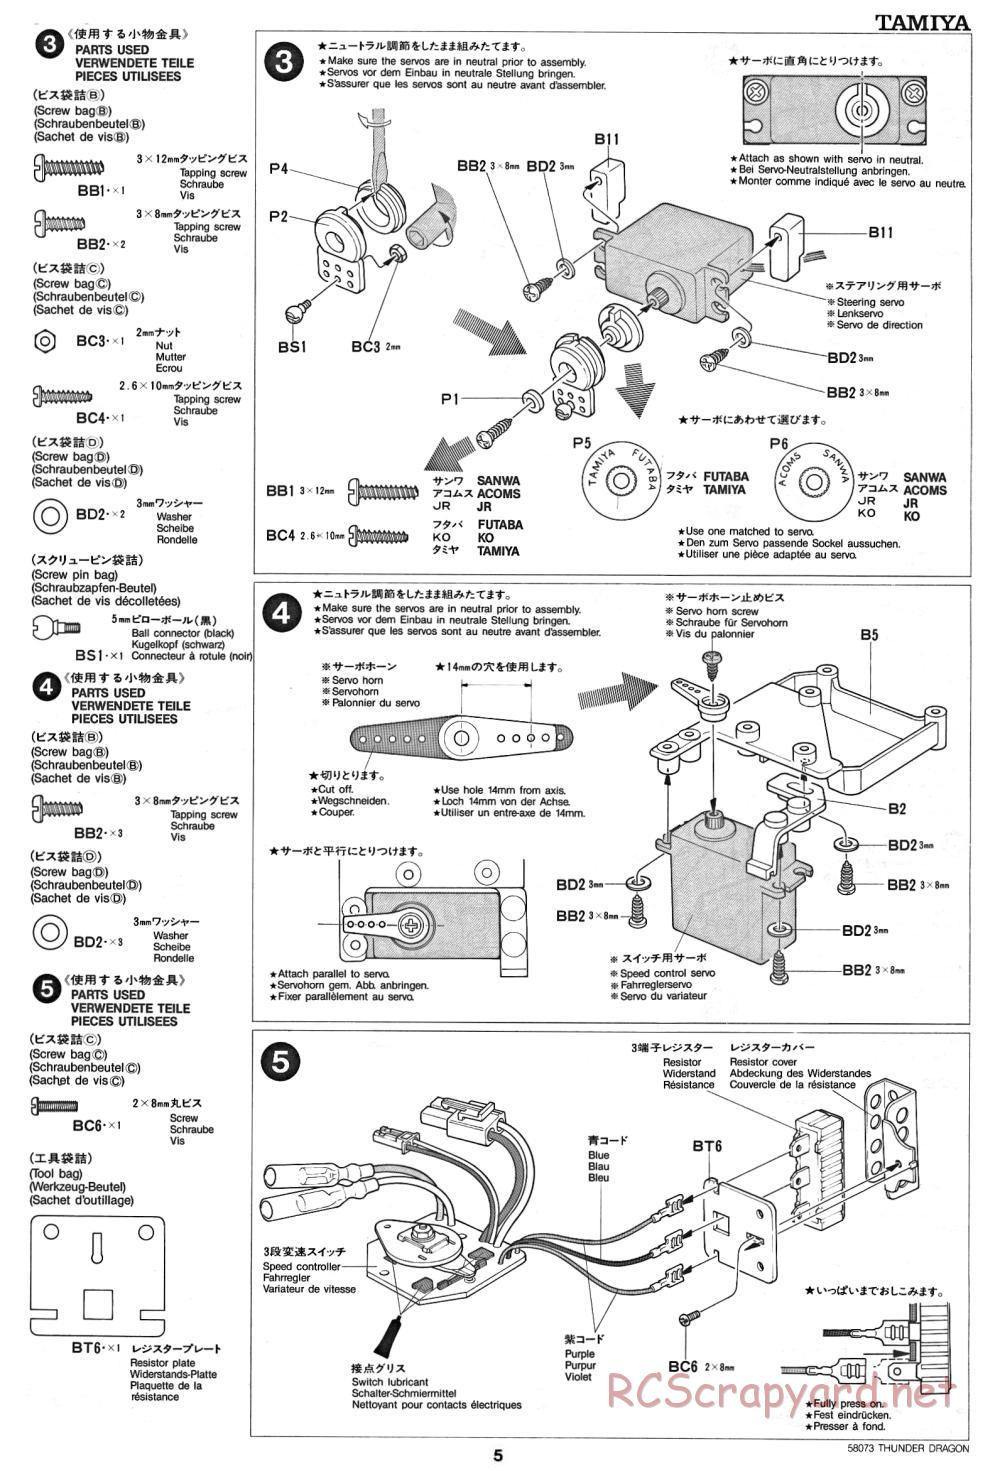 Tamiya - Thunder Dragon - 58073 - Manual - Page 5